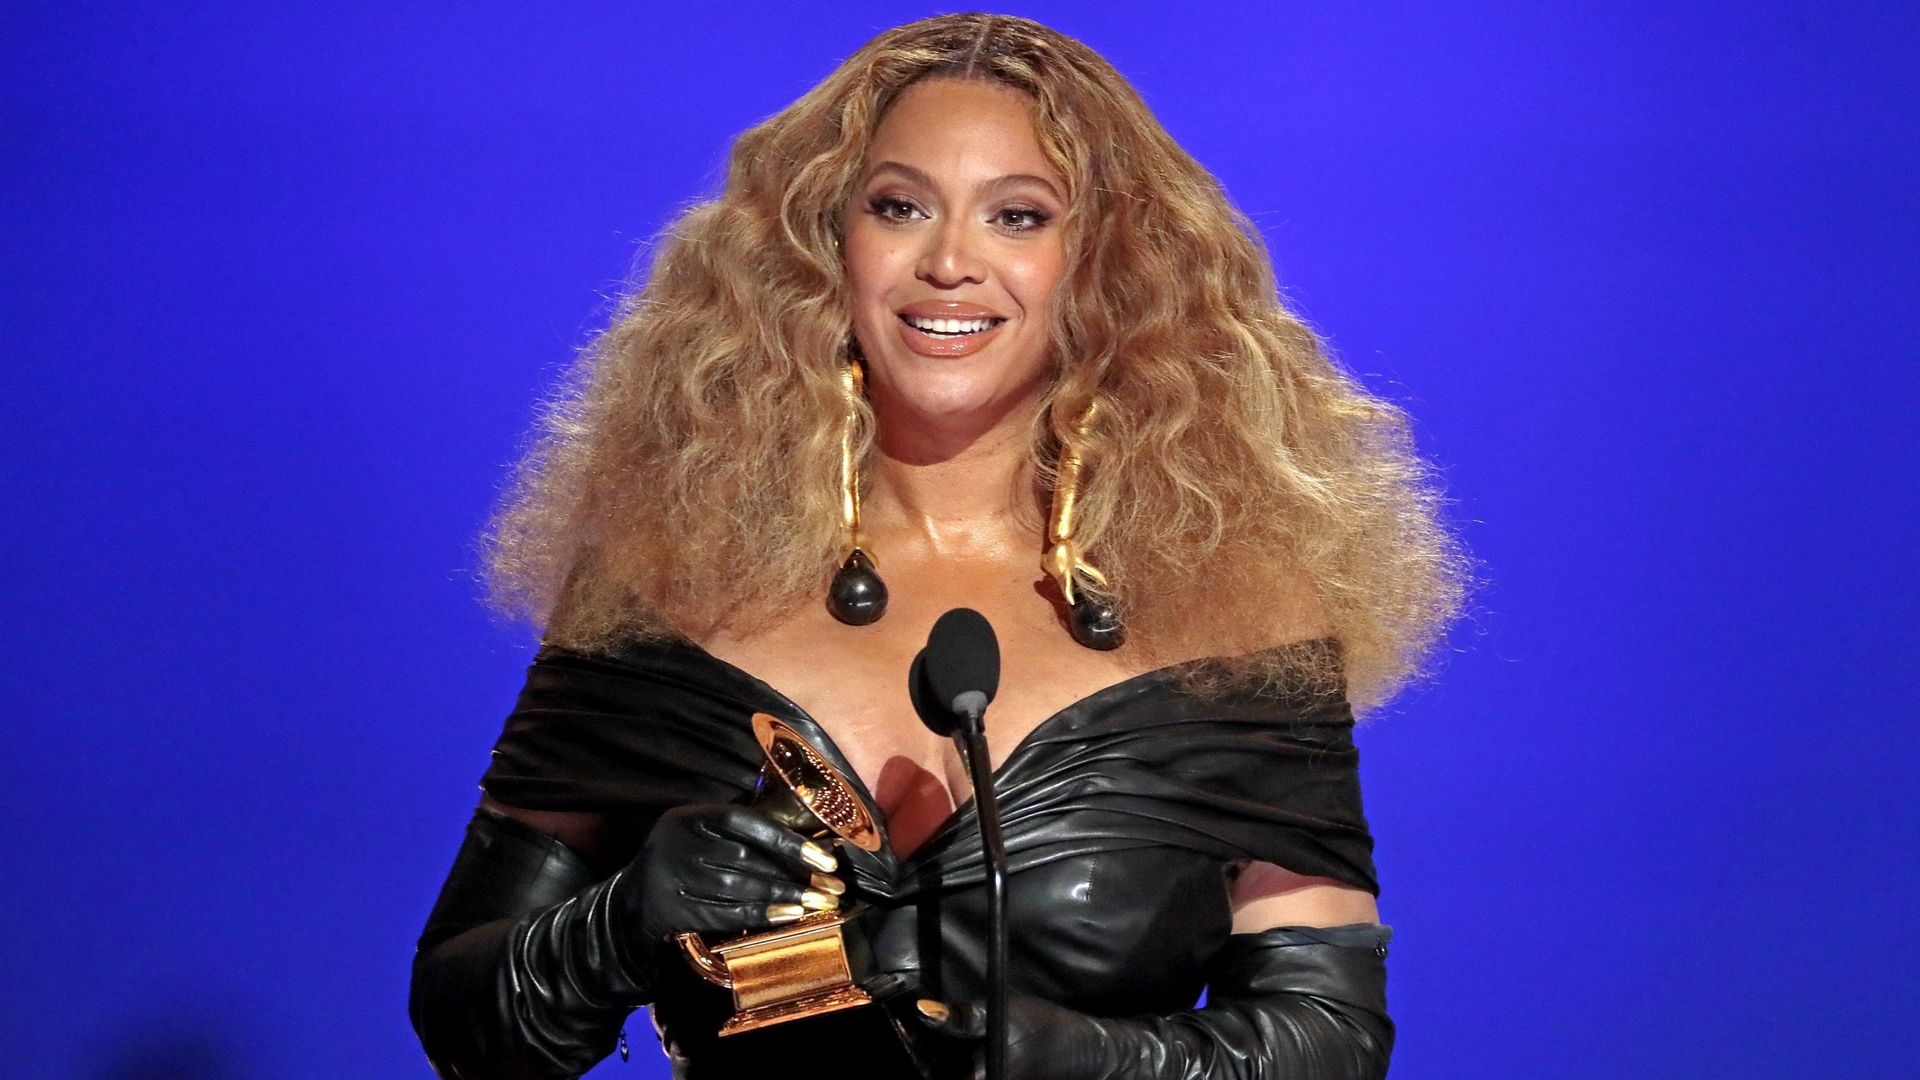 Le single "Break My Soul" de Beyoncé entraine une vague de démissions.